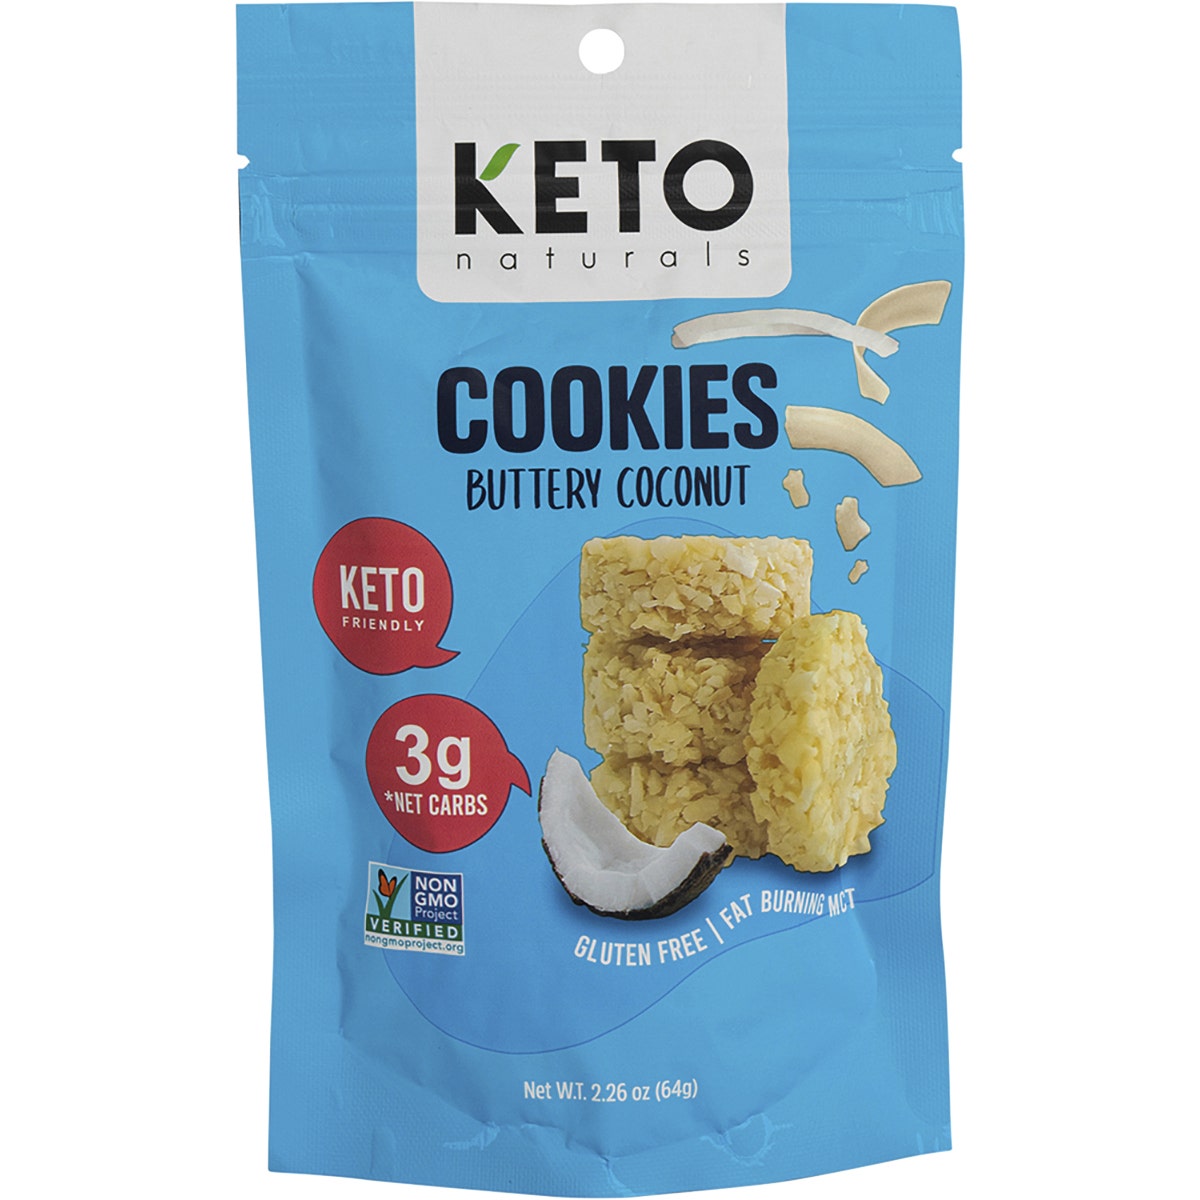 Keto Naturals Cookies - 8 x 64g